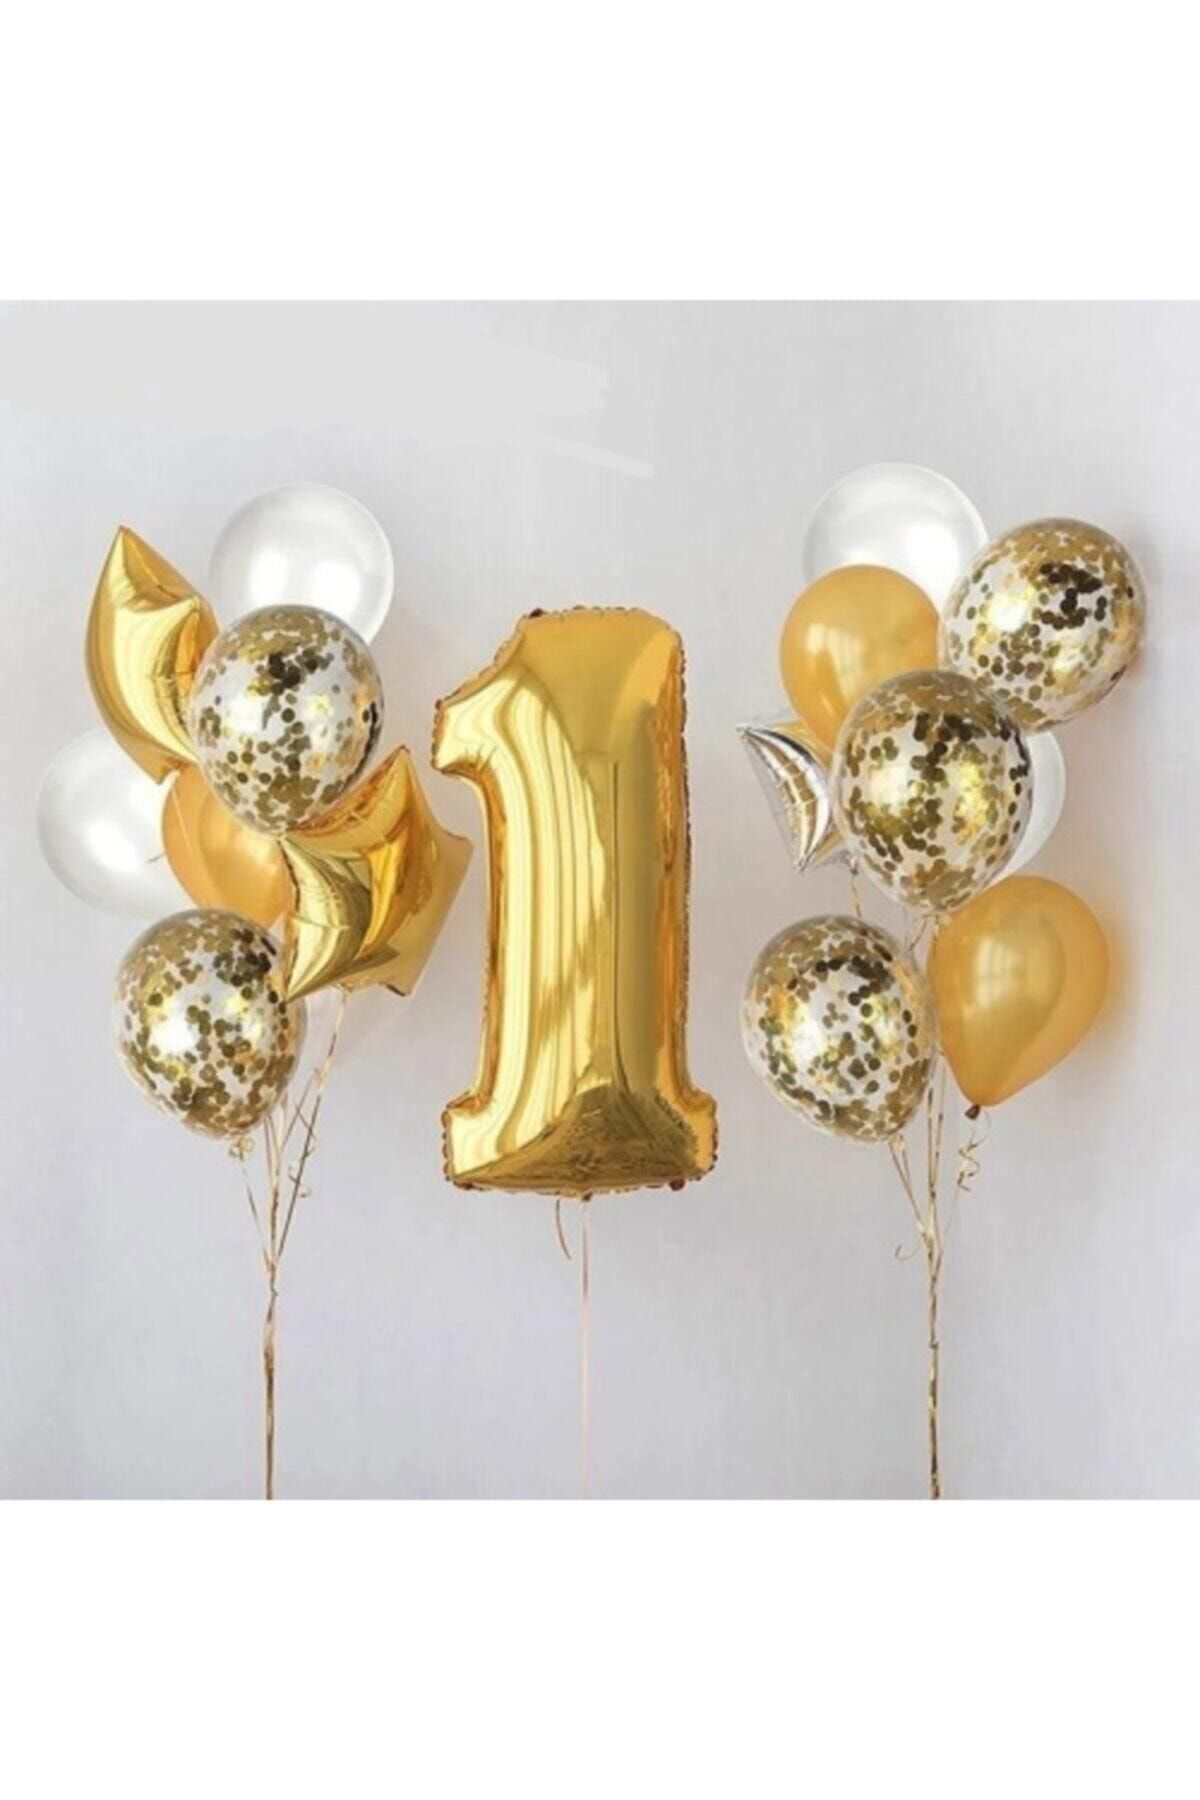 TATLI GÜNLER 1 Yaş Gold Folyo Balon Şeffaf Balon Seti Doğum Günü Parti Seti